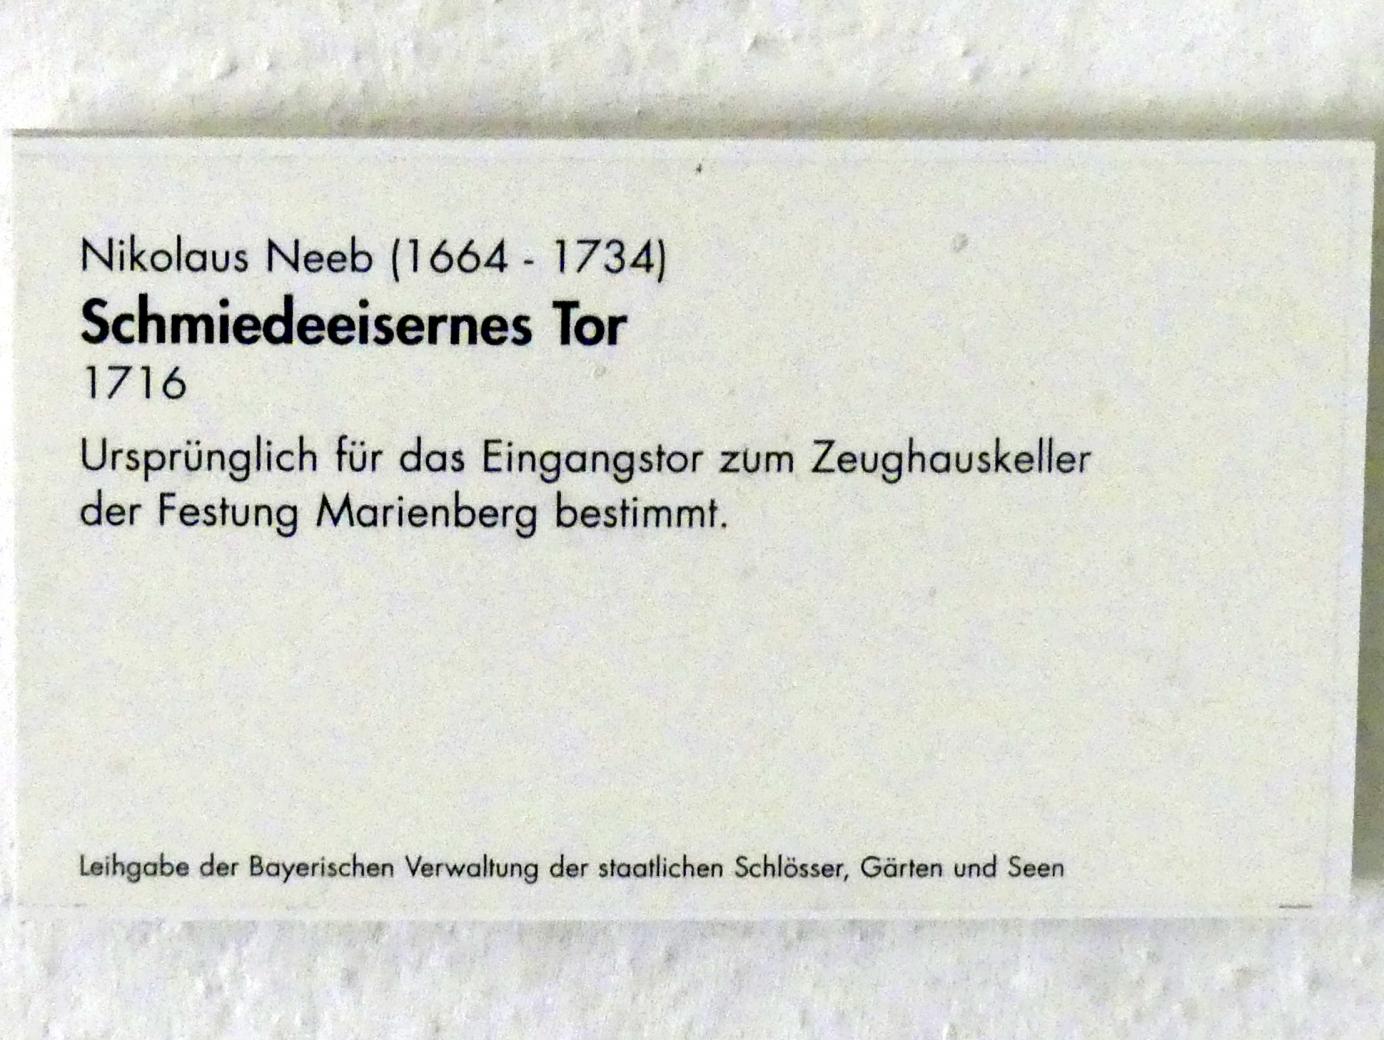 Nikolaus Neeb (1716), Schmiedeeisernes Tor, Würzburg, Festung Marienberg, jetzt Würzburg, Museum für Franken (ehem. Mainfränkisches Museum), Schönbornhalle, 1716, Bild 2/2